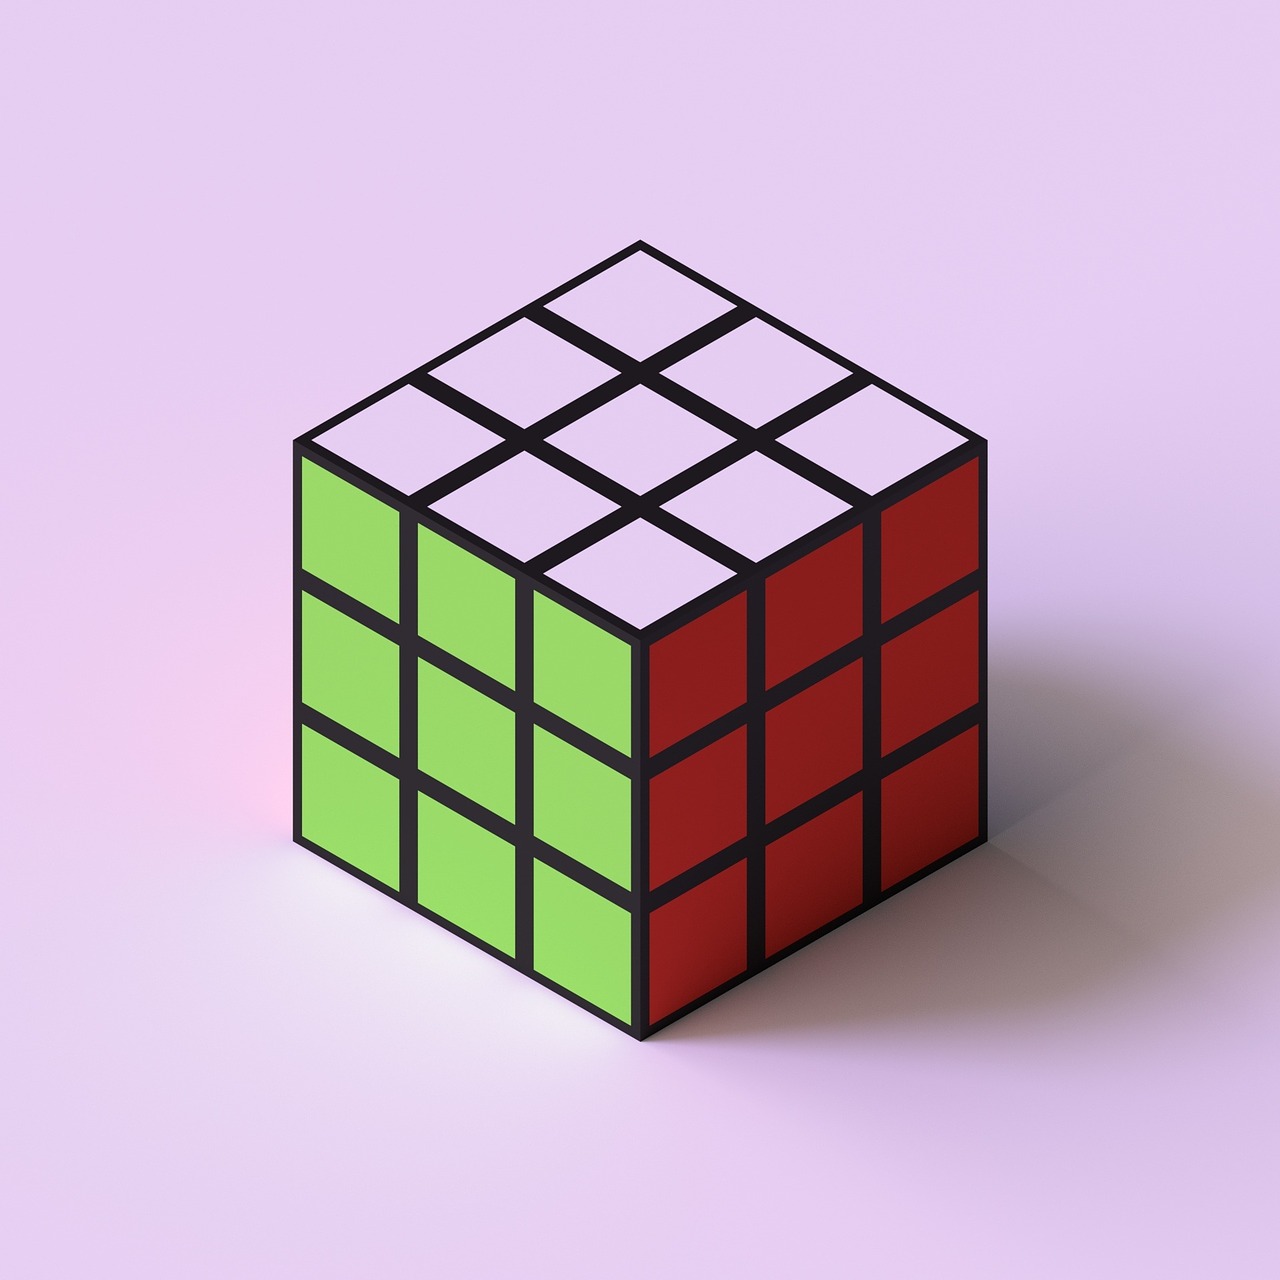 2. Hướng dẫn giải thuật Rubik 4x4